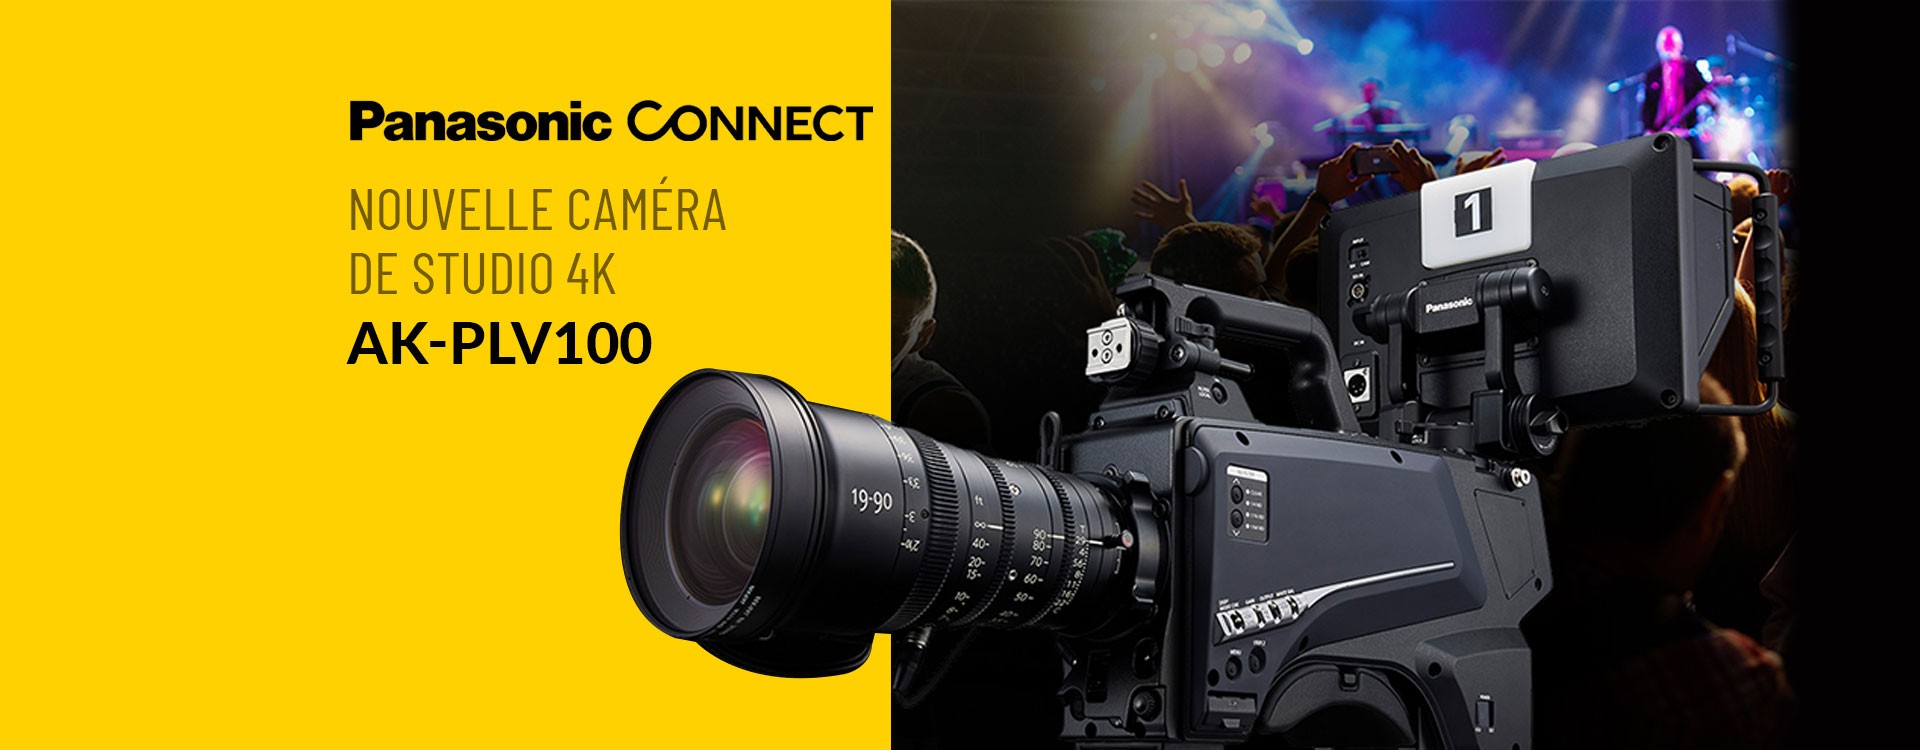 Nouvelle caméra de studio Panasonic 4K AK PLV100